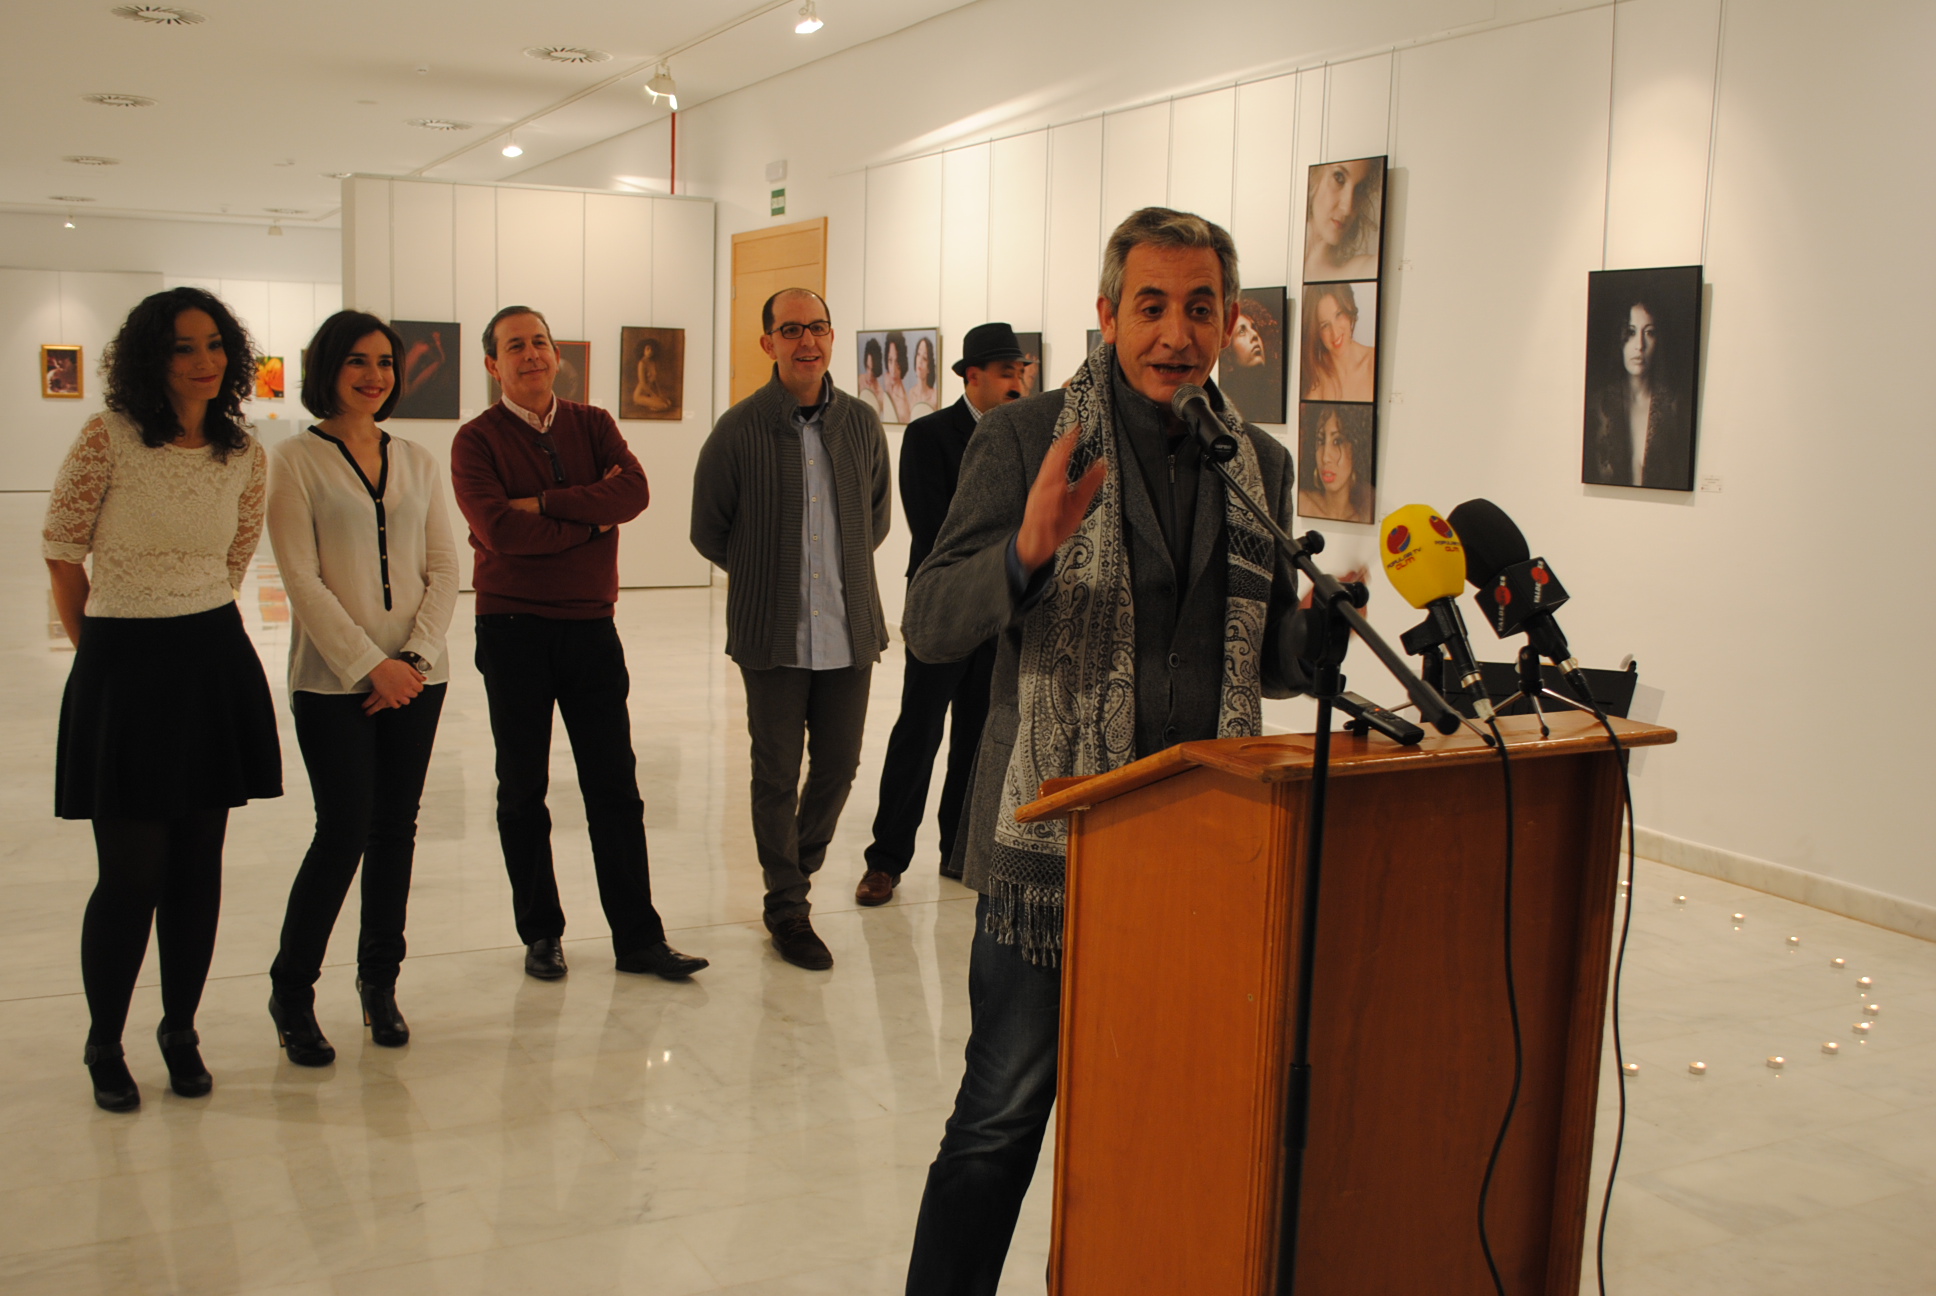 El alcalde inauguró en La Confianza la exposición fotográfica de “Group of artists” – Valdepeñas